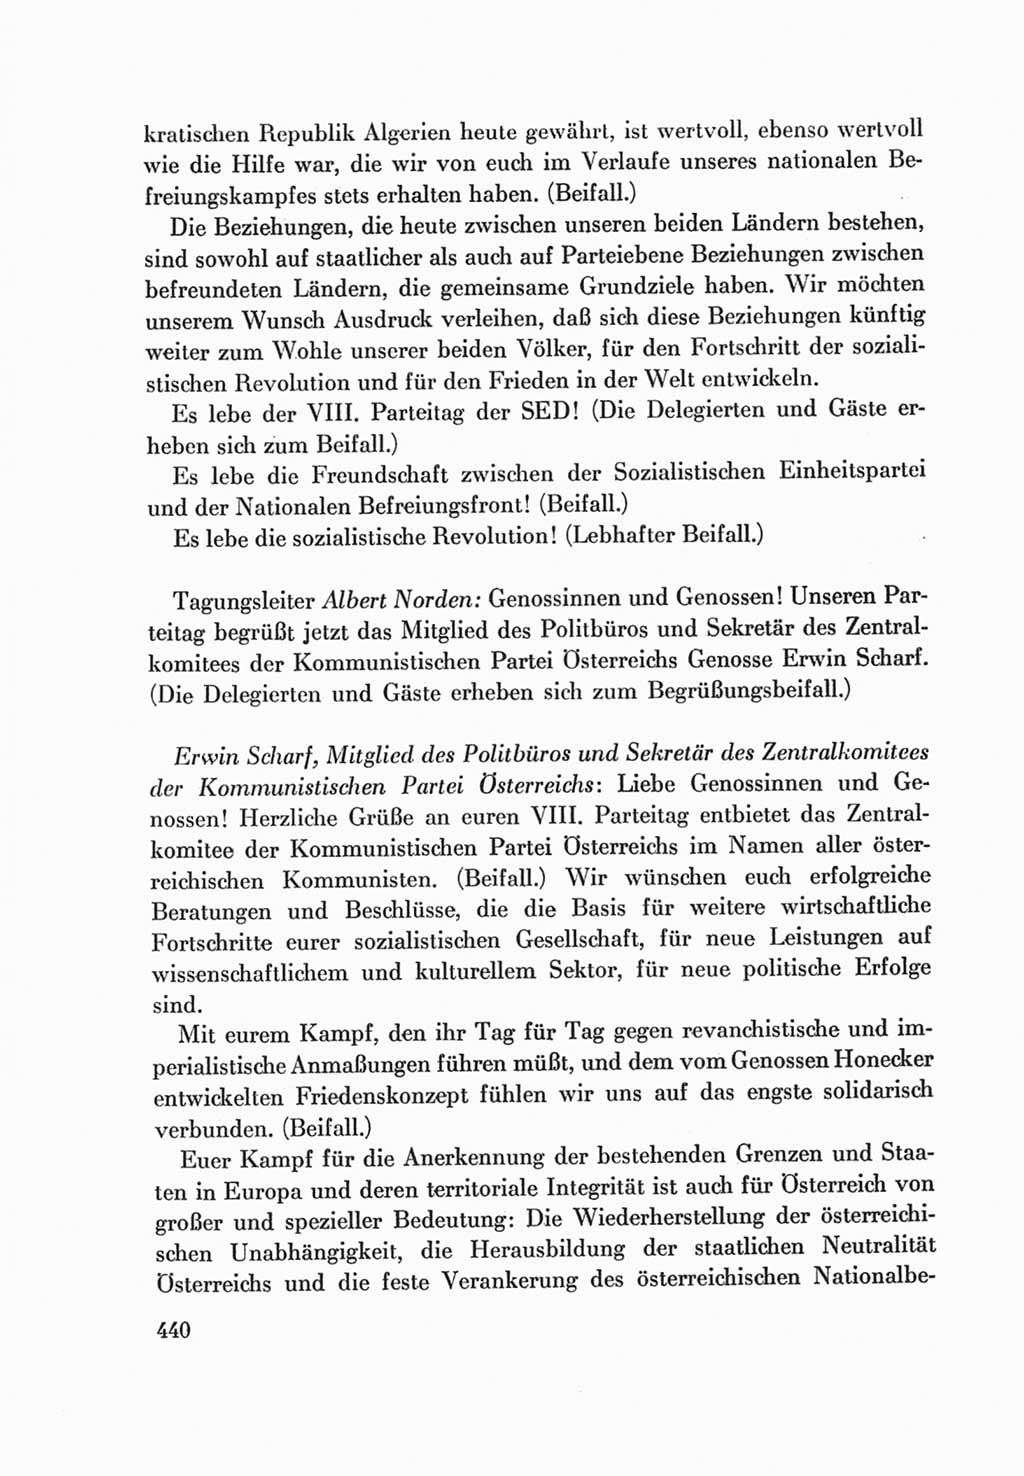 Protokoll der Verhandlungen des Ⅷ. Parteitages der Sozialistischen Einheitspartei Deutschlands (SED) [Deutsche Demokratische Republik (DDR)] 1971, Band 1, Seite 440 (Prot. Verh. Ⅷ. PT SED DDR 1971, Bd. 1, S. 440)